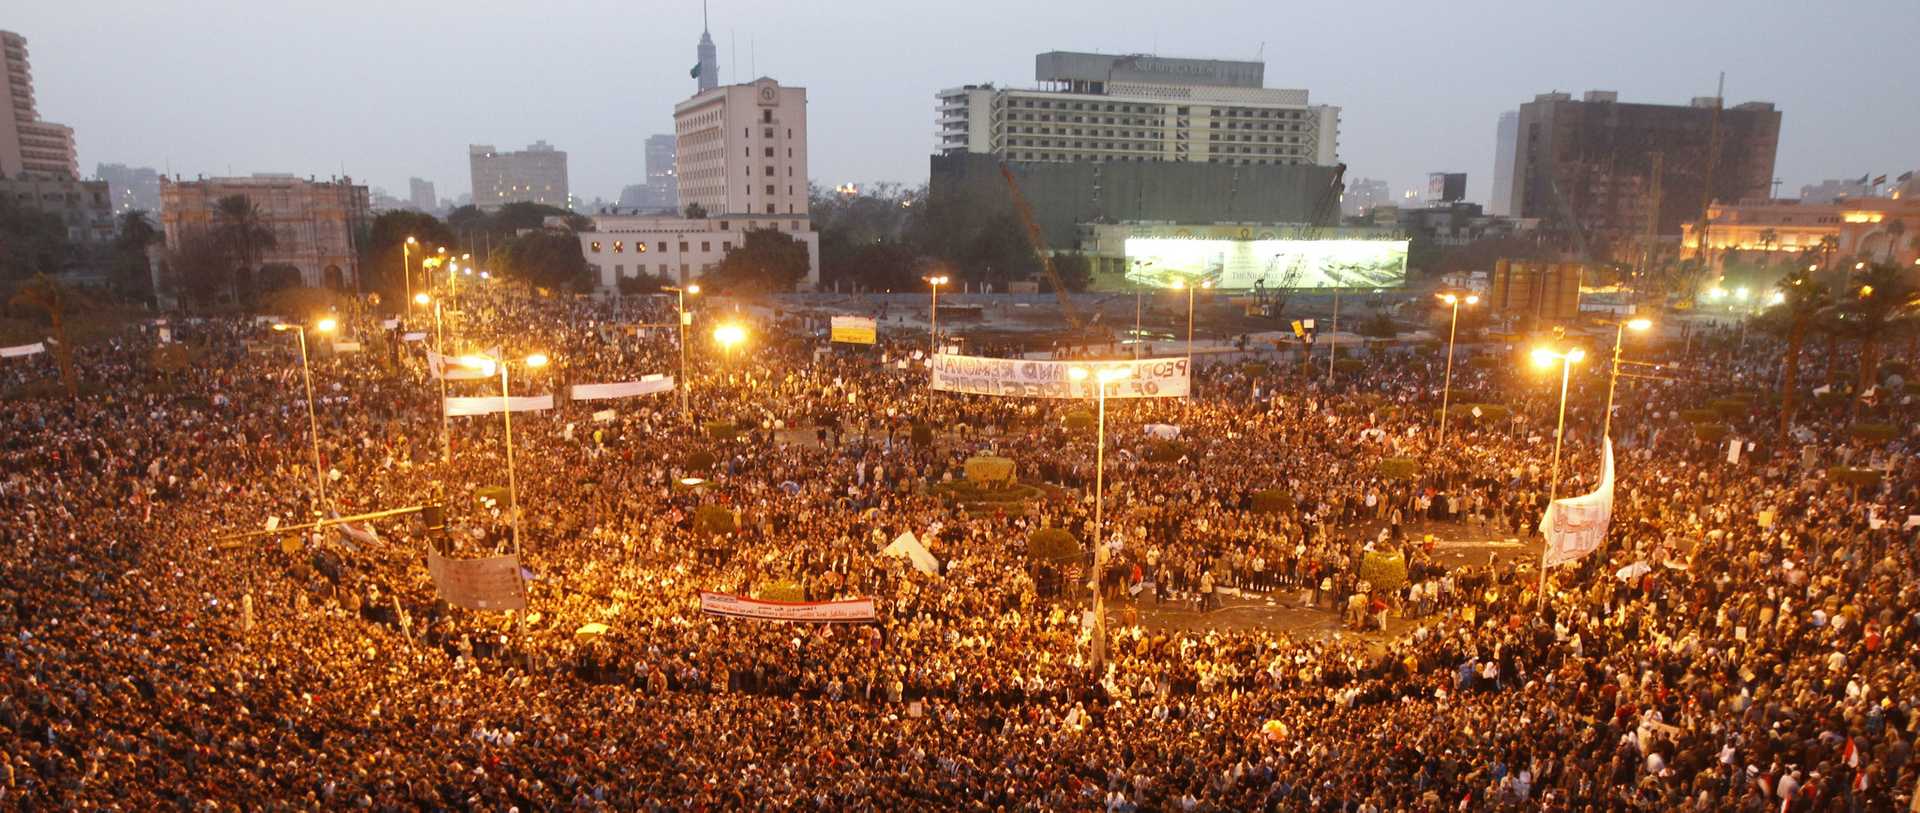 Oversiktsbilde over tahrirplassen i Kairo, april 2011